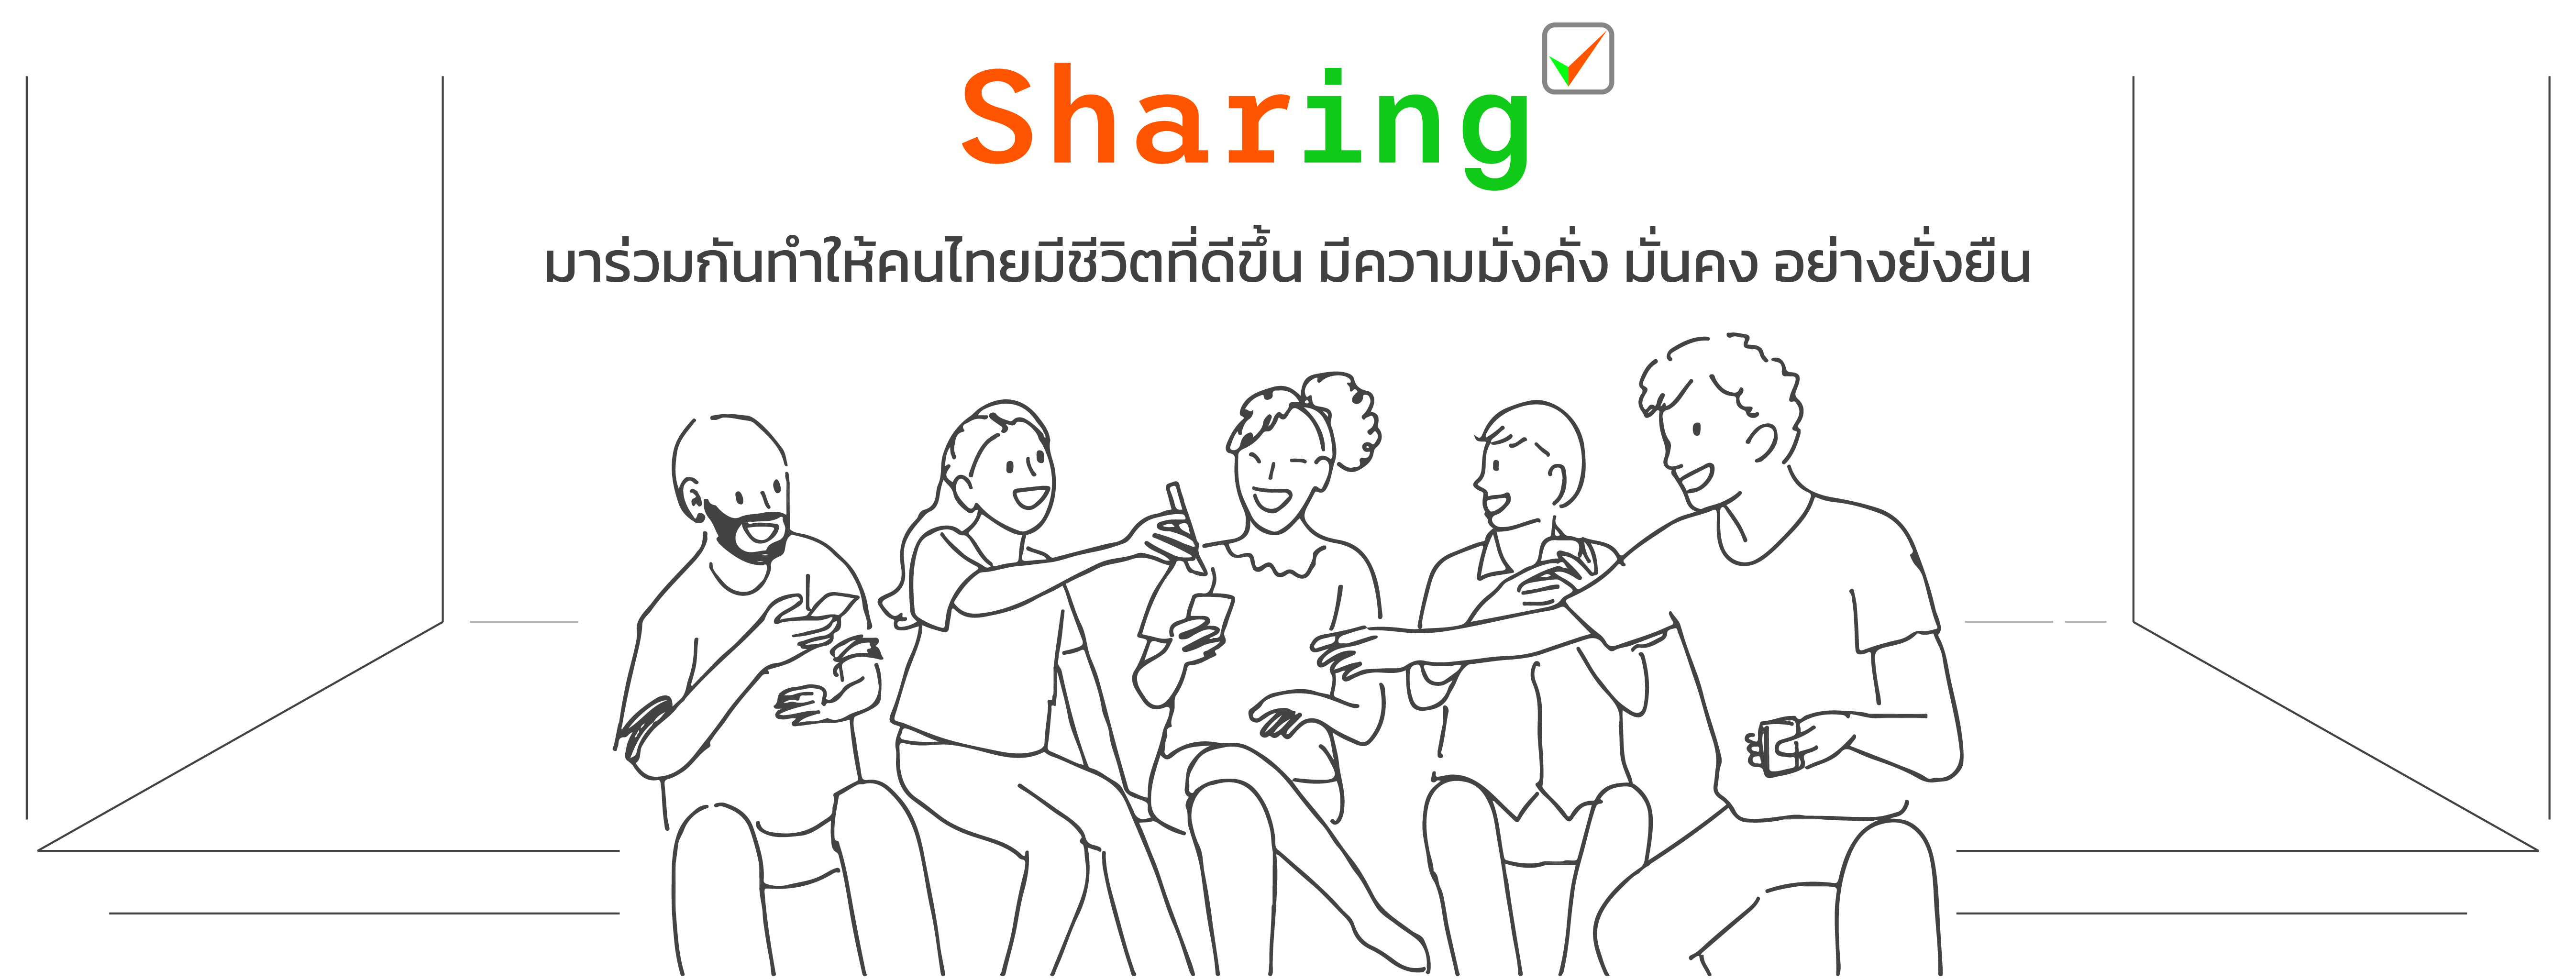 การเงิน ThaiPFA sharing คำคมเรื่องราวดีดีเพื่อเป็นแรงบันดาลใจ